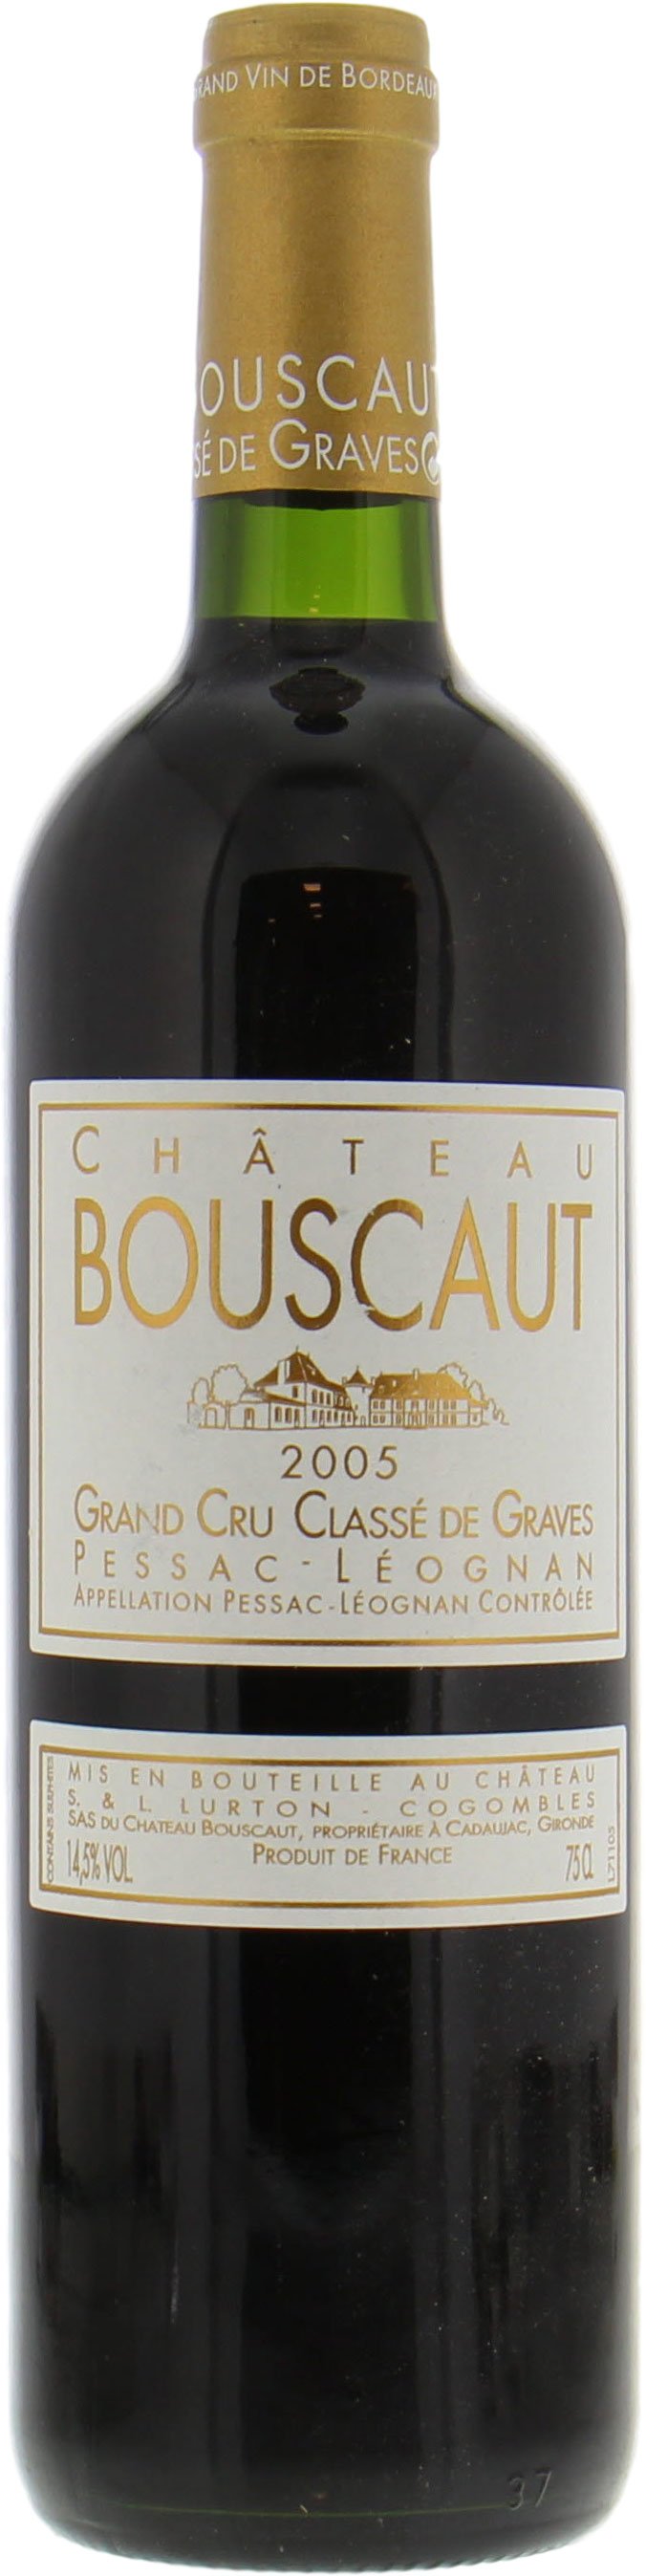 Chateau Bouscaut - Chateau Bouscaut 2005